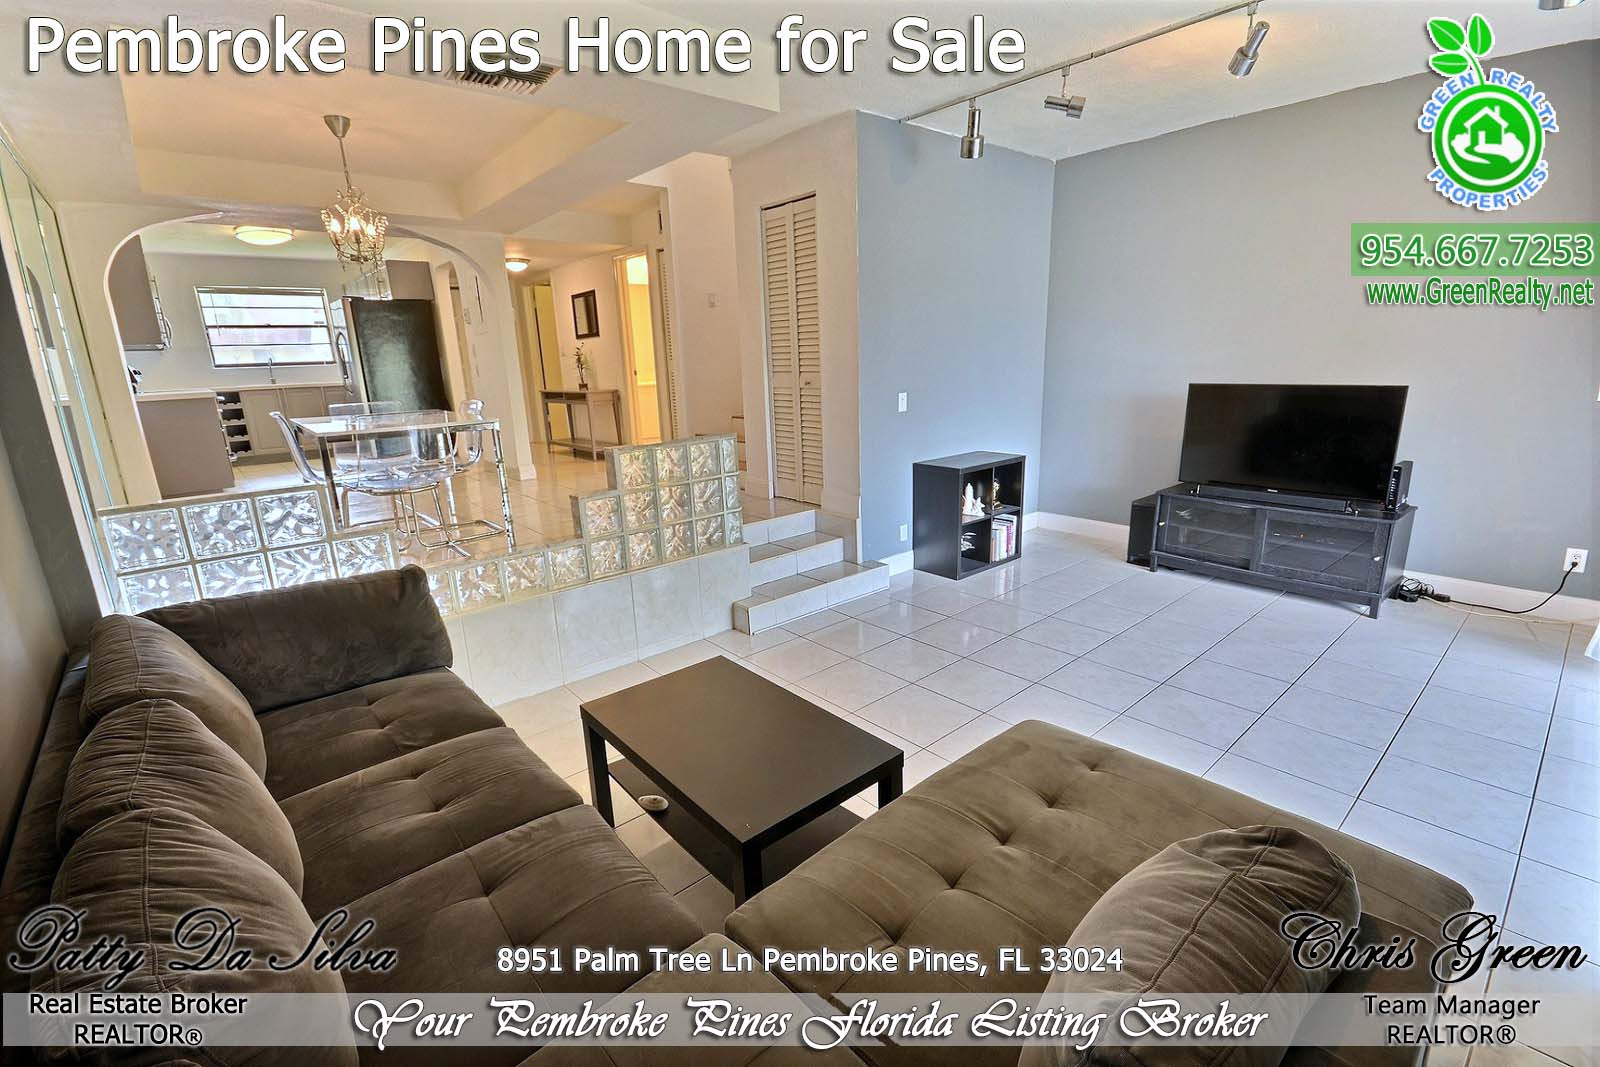 Pembroke Pines Homes For Sale - 8951 Palm Tree Lane (9)